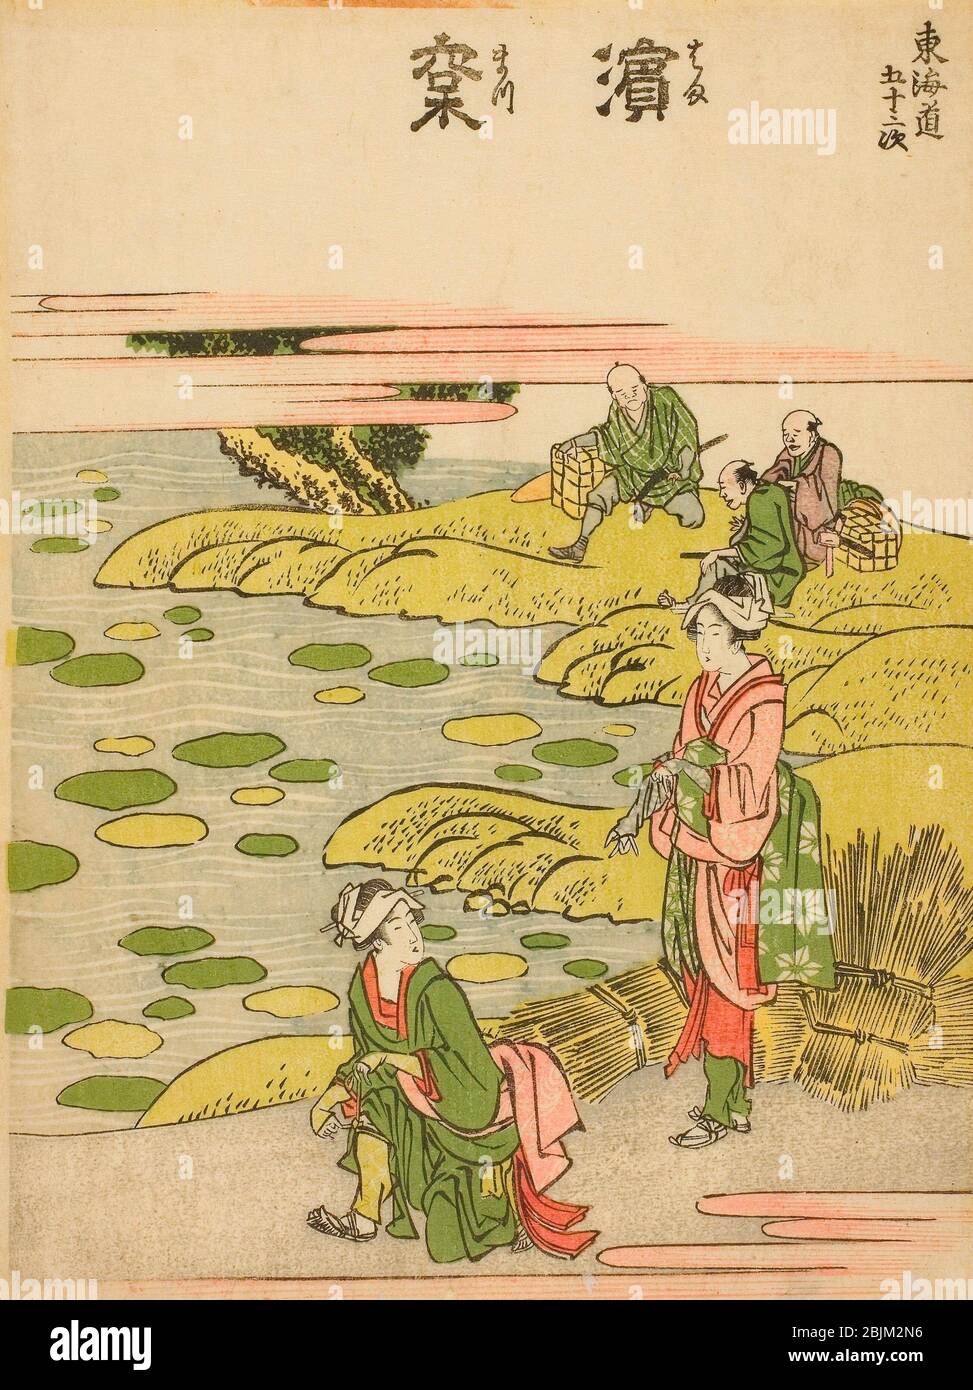 Author: Katsushika Hokusai. Hamamatsu, from the series 'Fifty-three Stations of the Tokaido (Tokaido gojusan tsugi)' - c. 1806 - Katsushika Hokusai Stock Photo